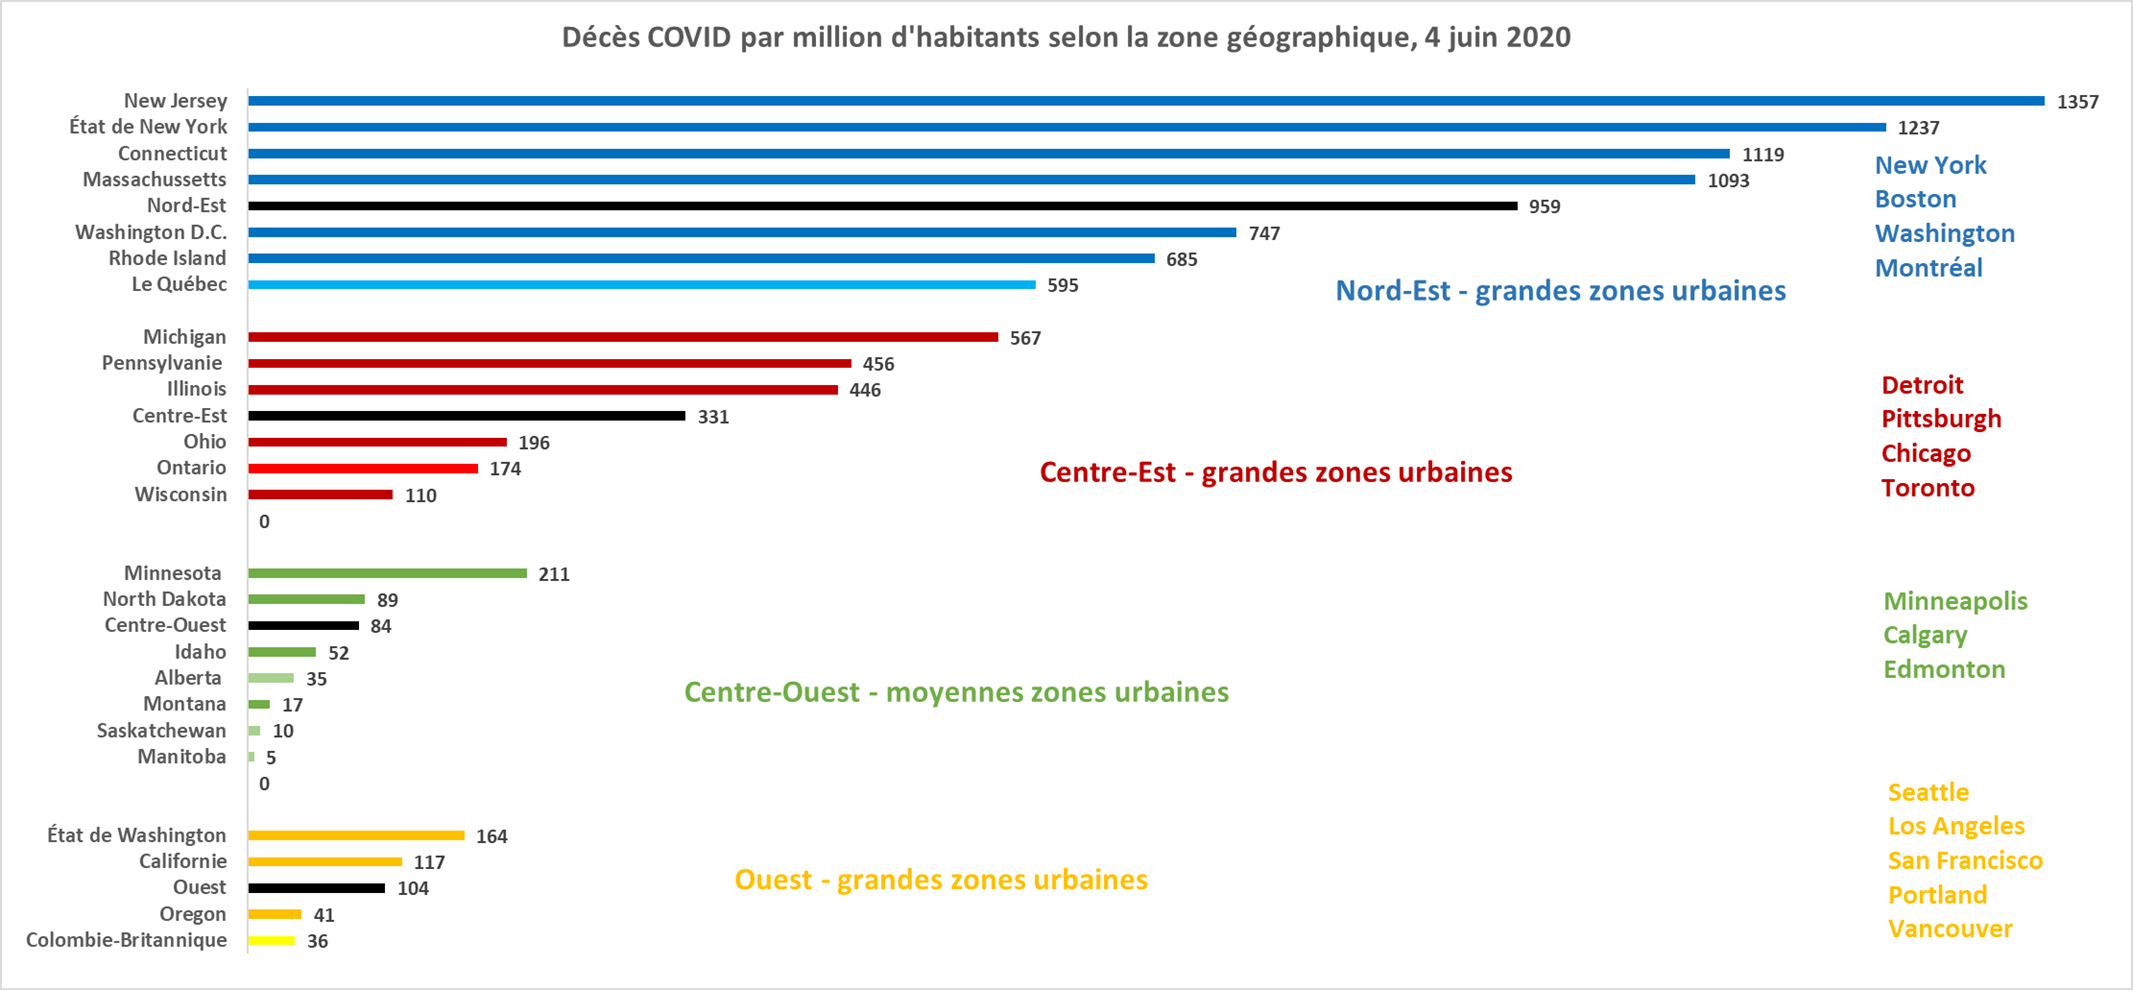 Décès COVID-19 par million d'habitants par zone géographique